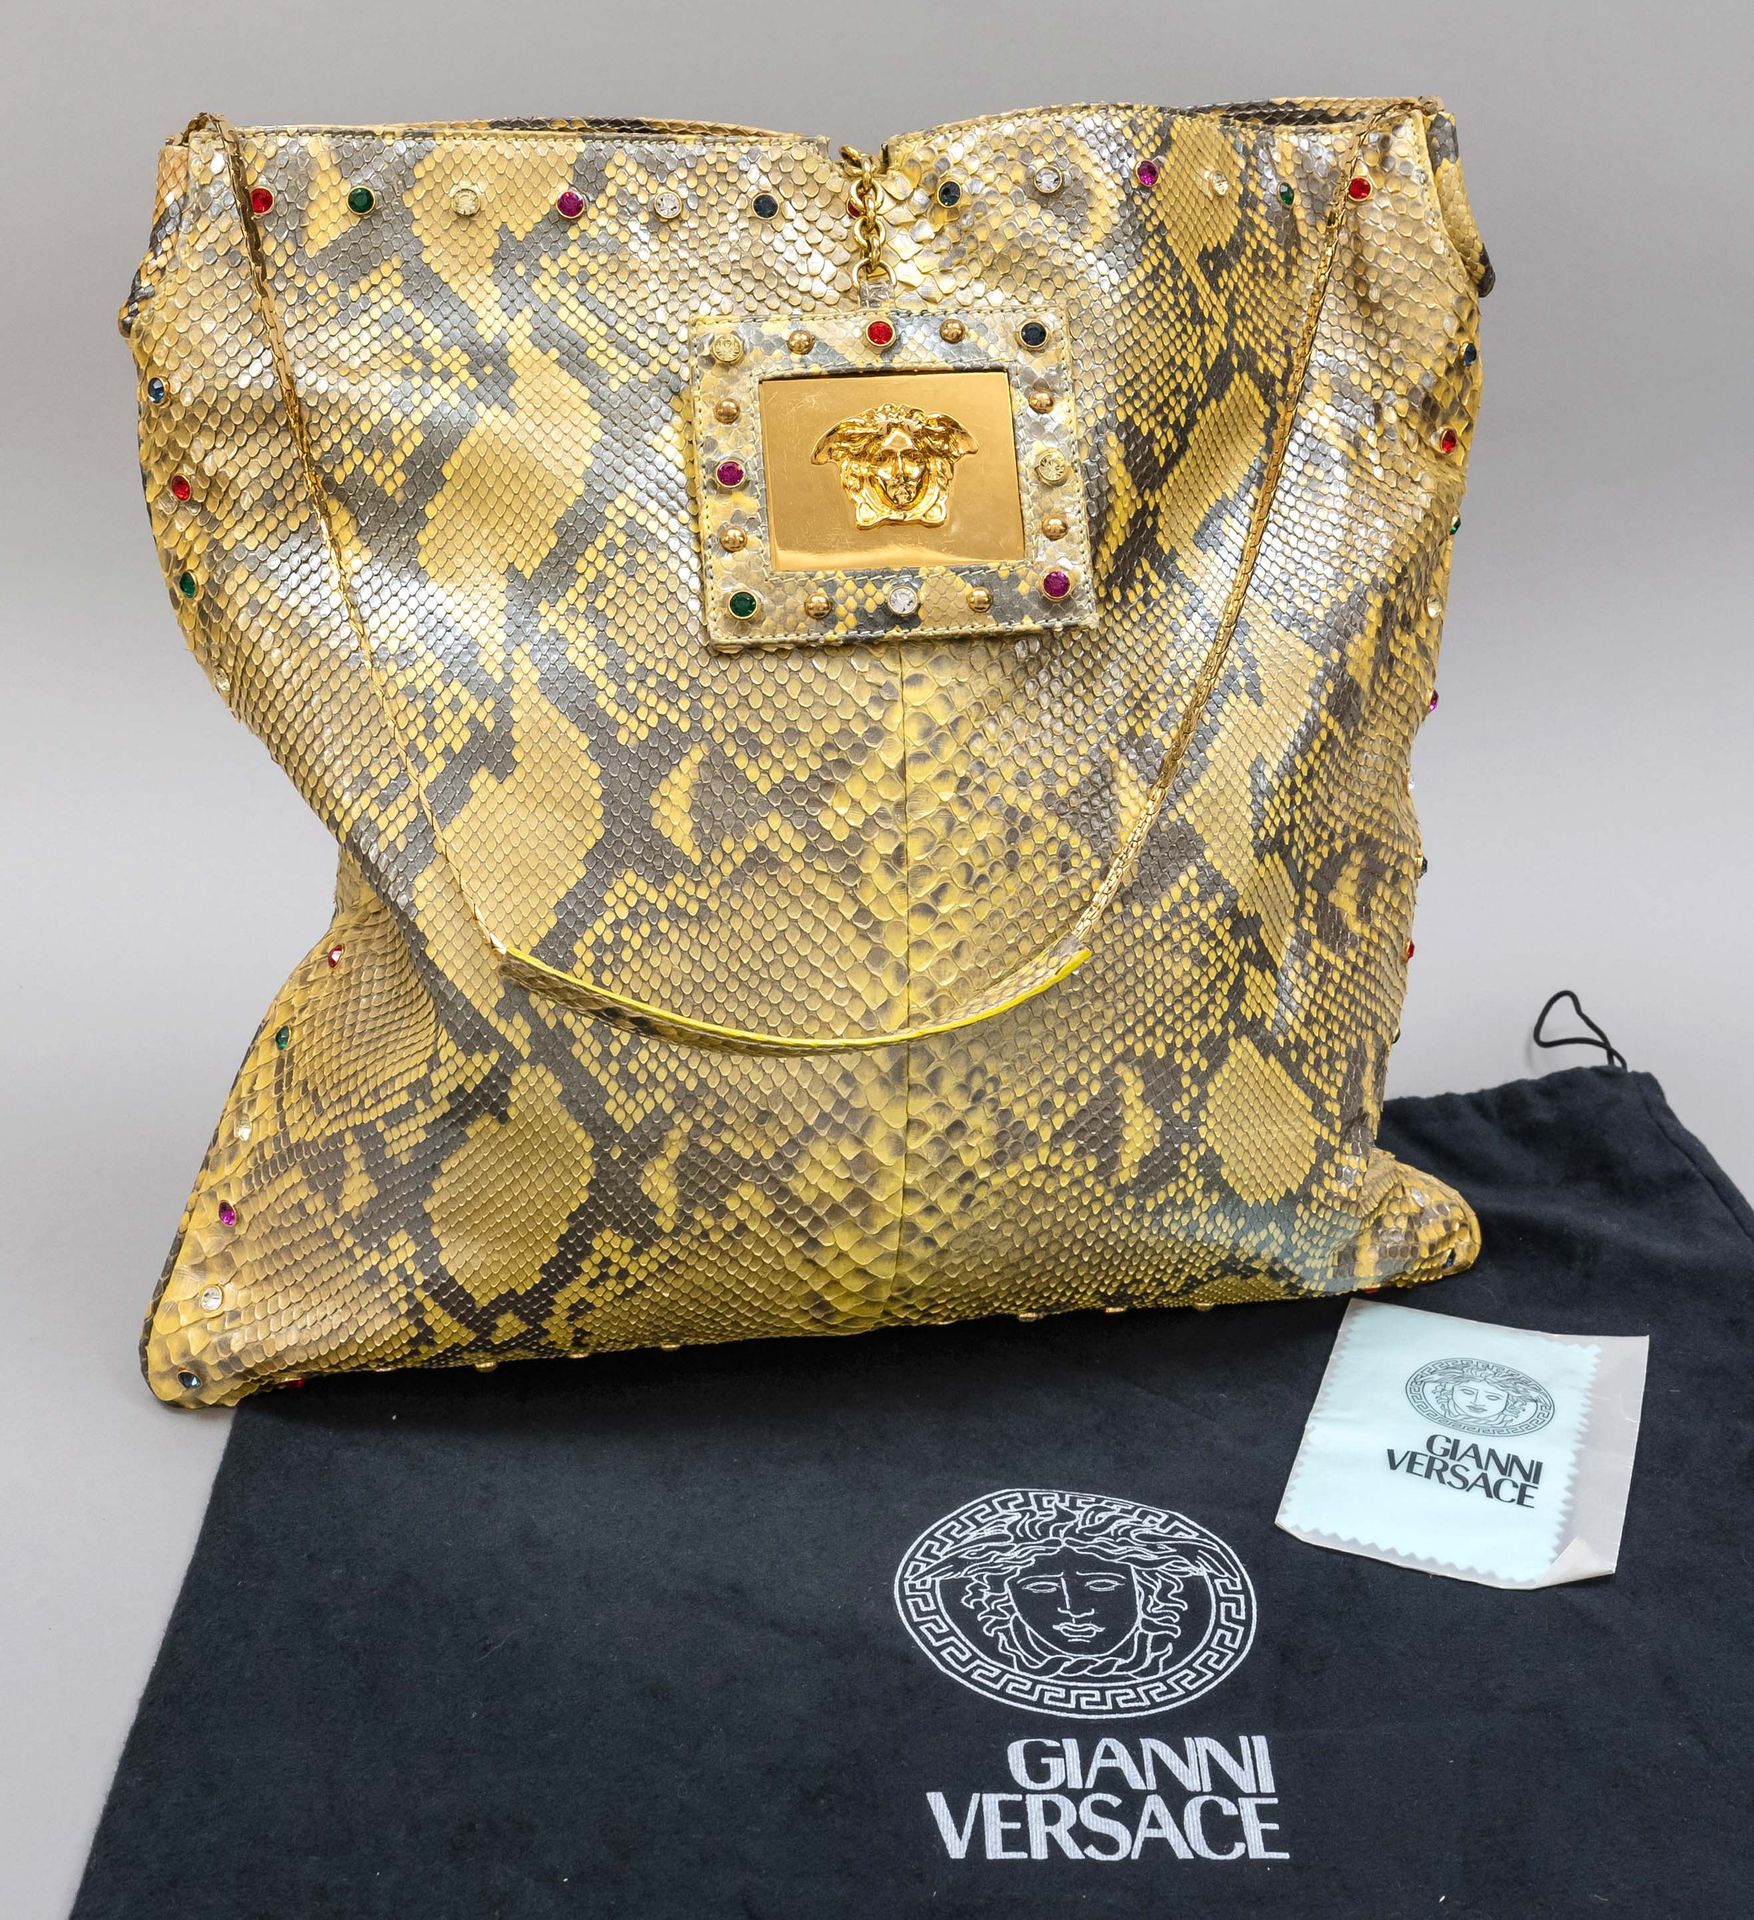 Null Versace, Gold Python Flat Tote Bag, gefärbtes Pythonleder in changierenden &hellip;